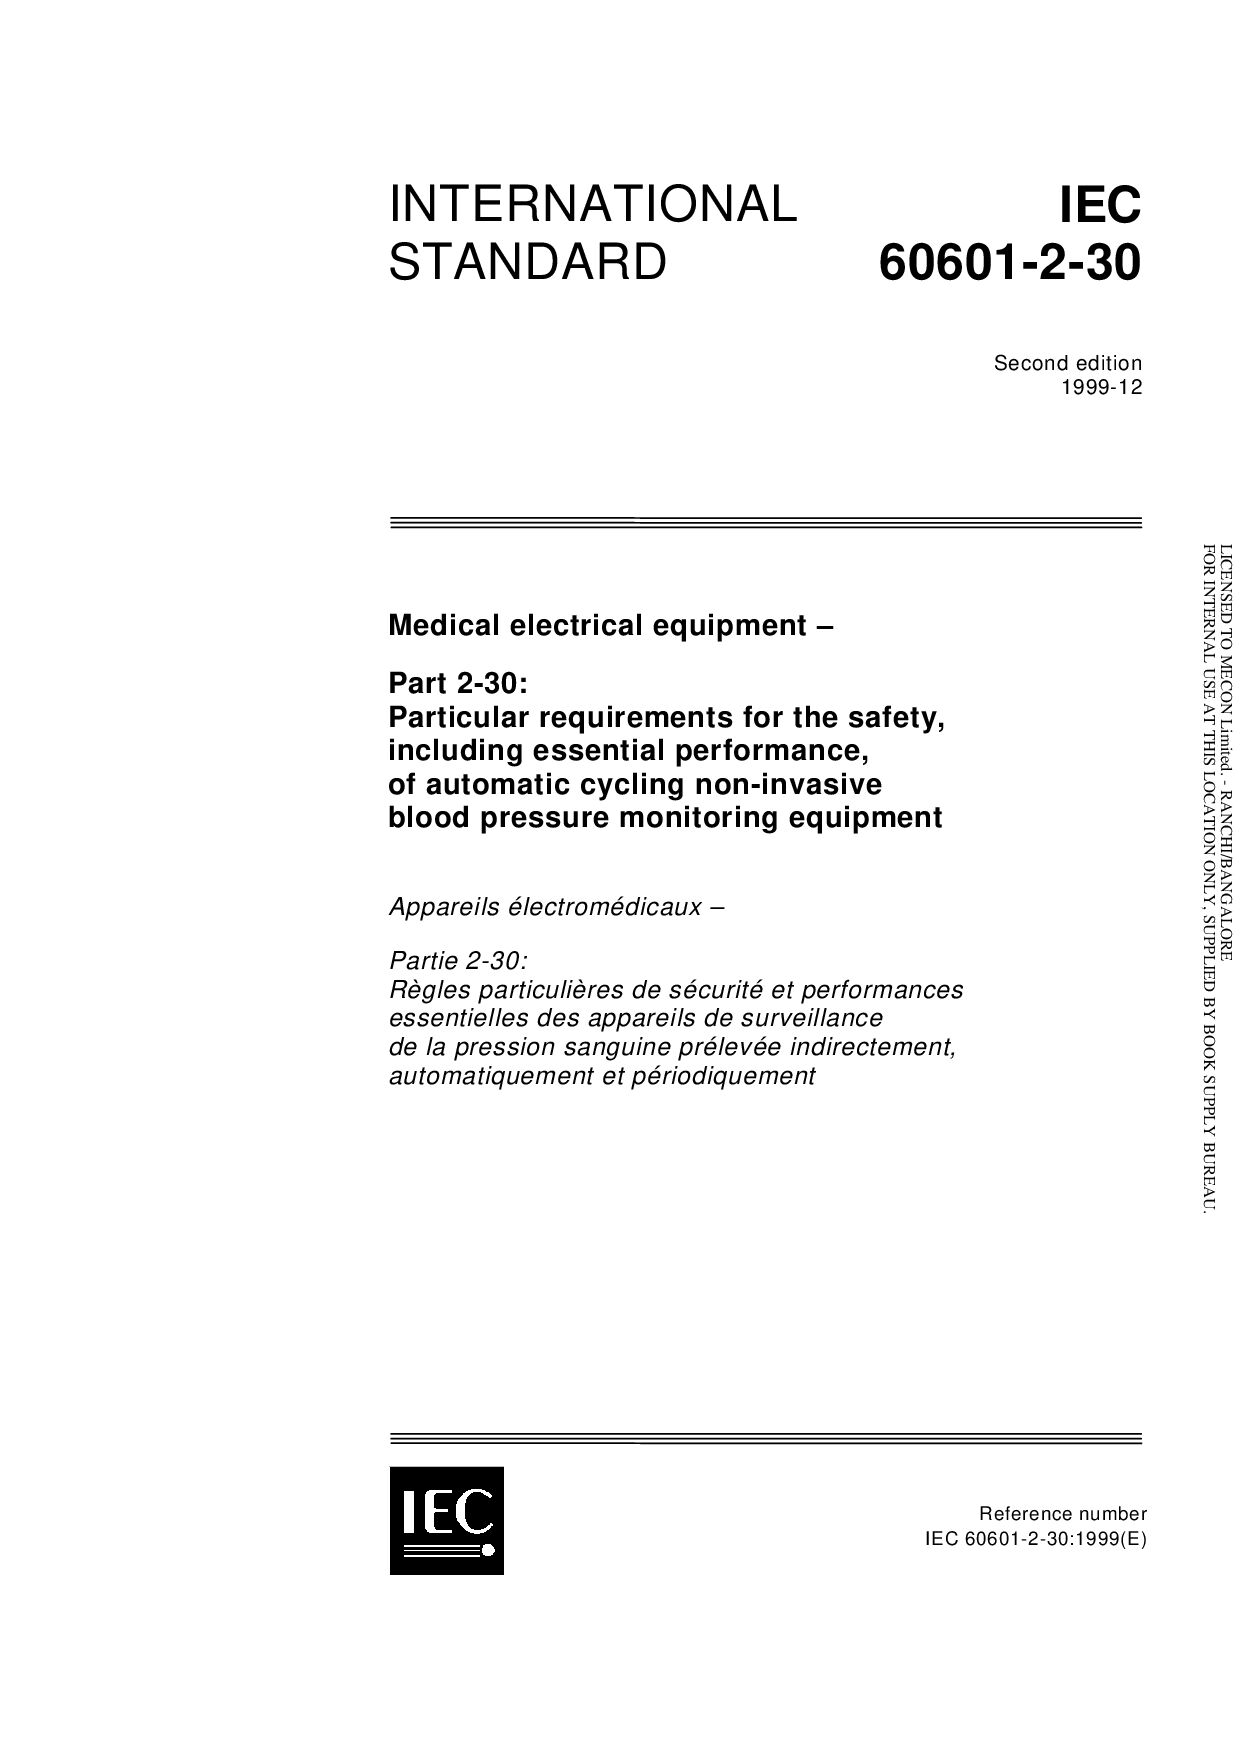 IEC 60601-2-30:1999